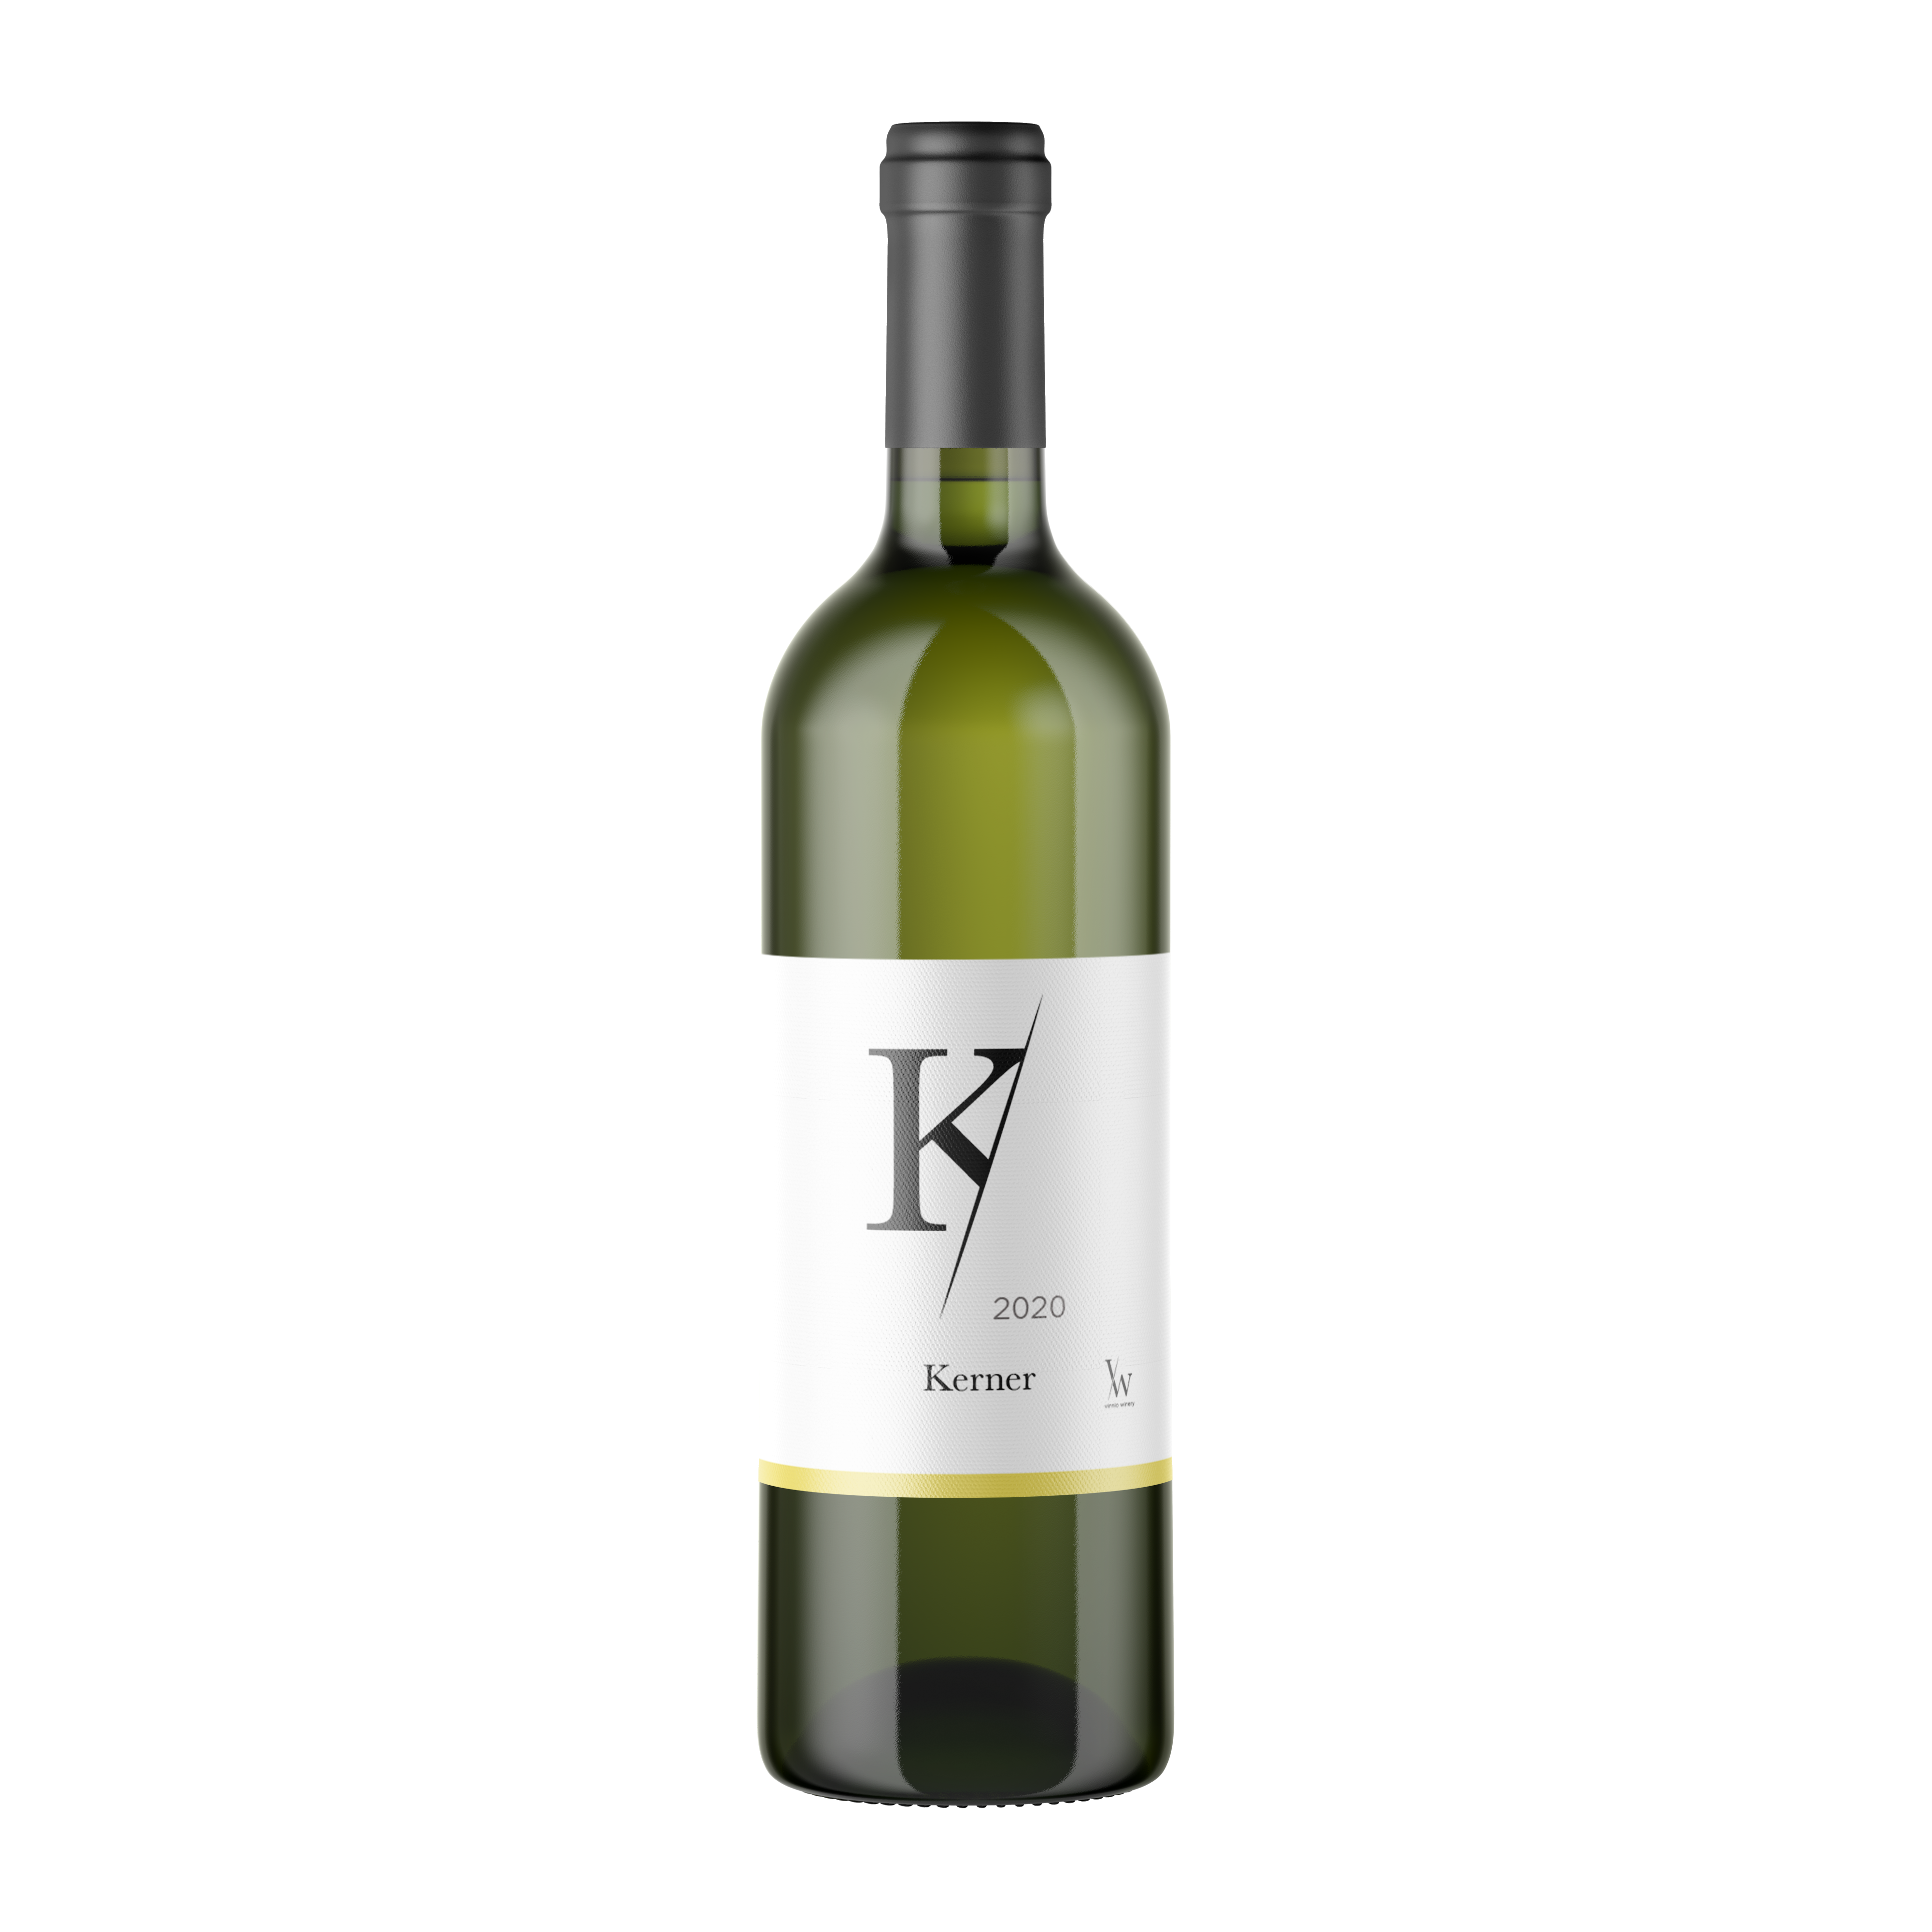 Vinnio Winery - Kerner 2020